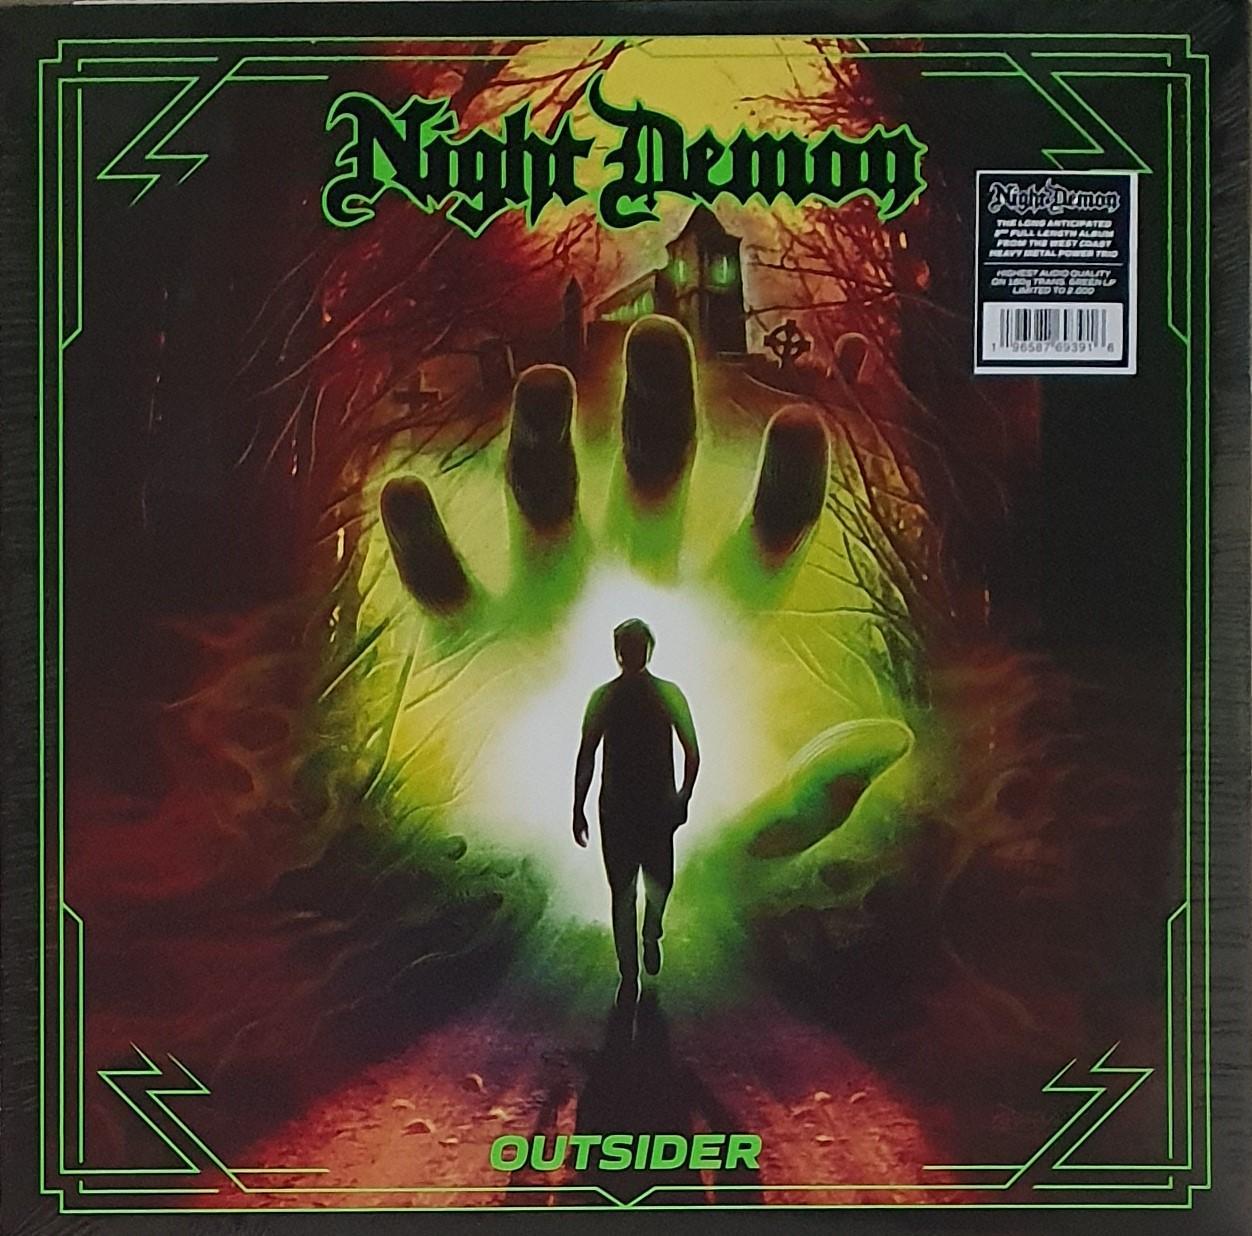 vinyle night demon outsider édition limitée vinyle vert recto